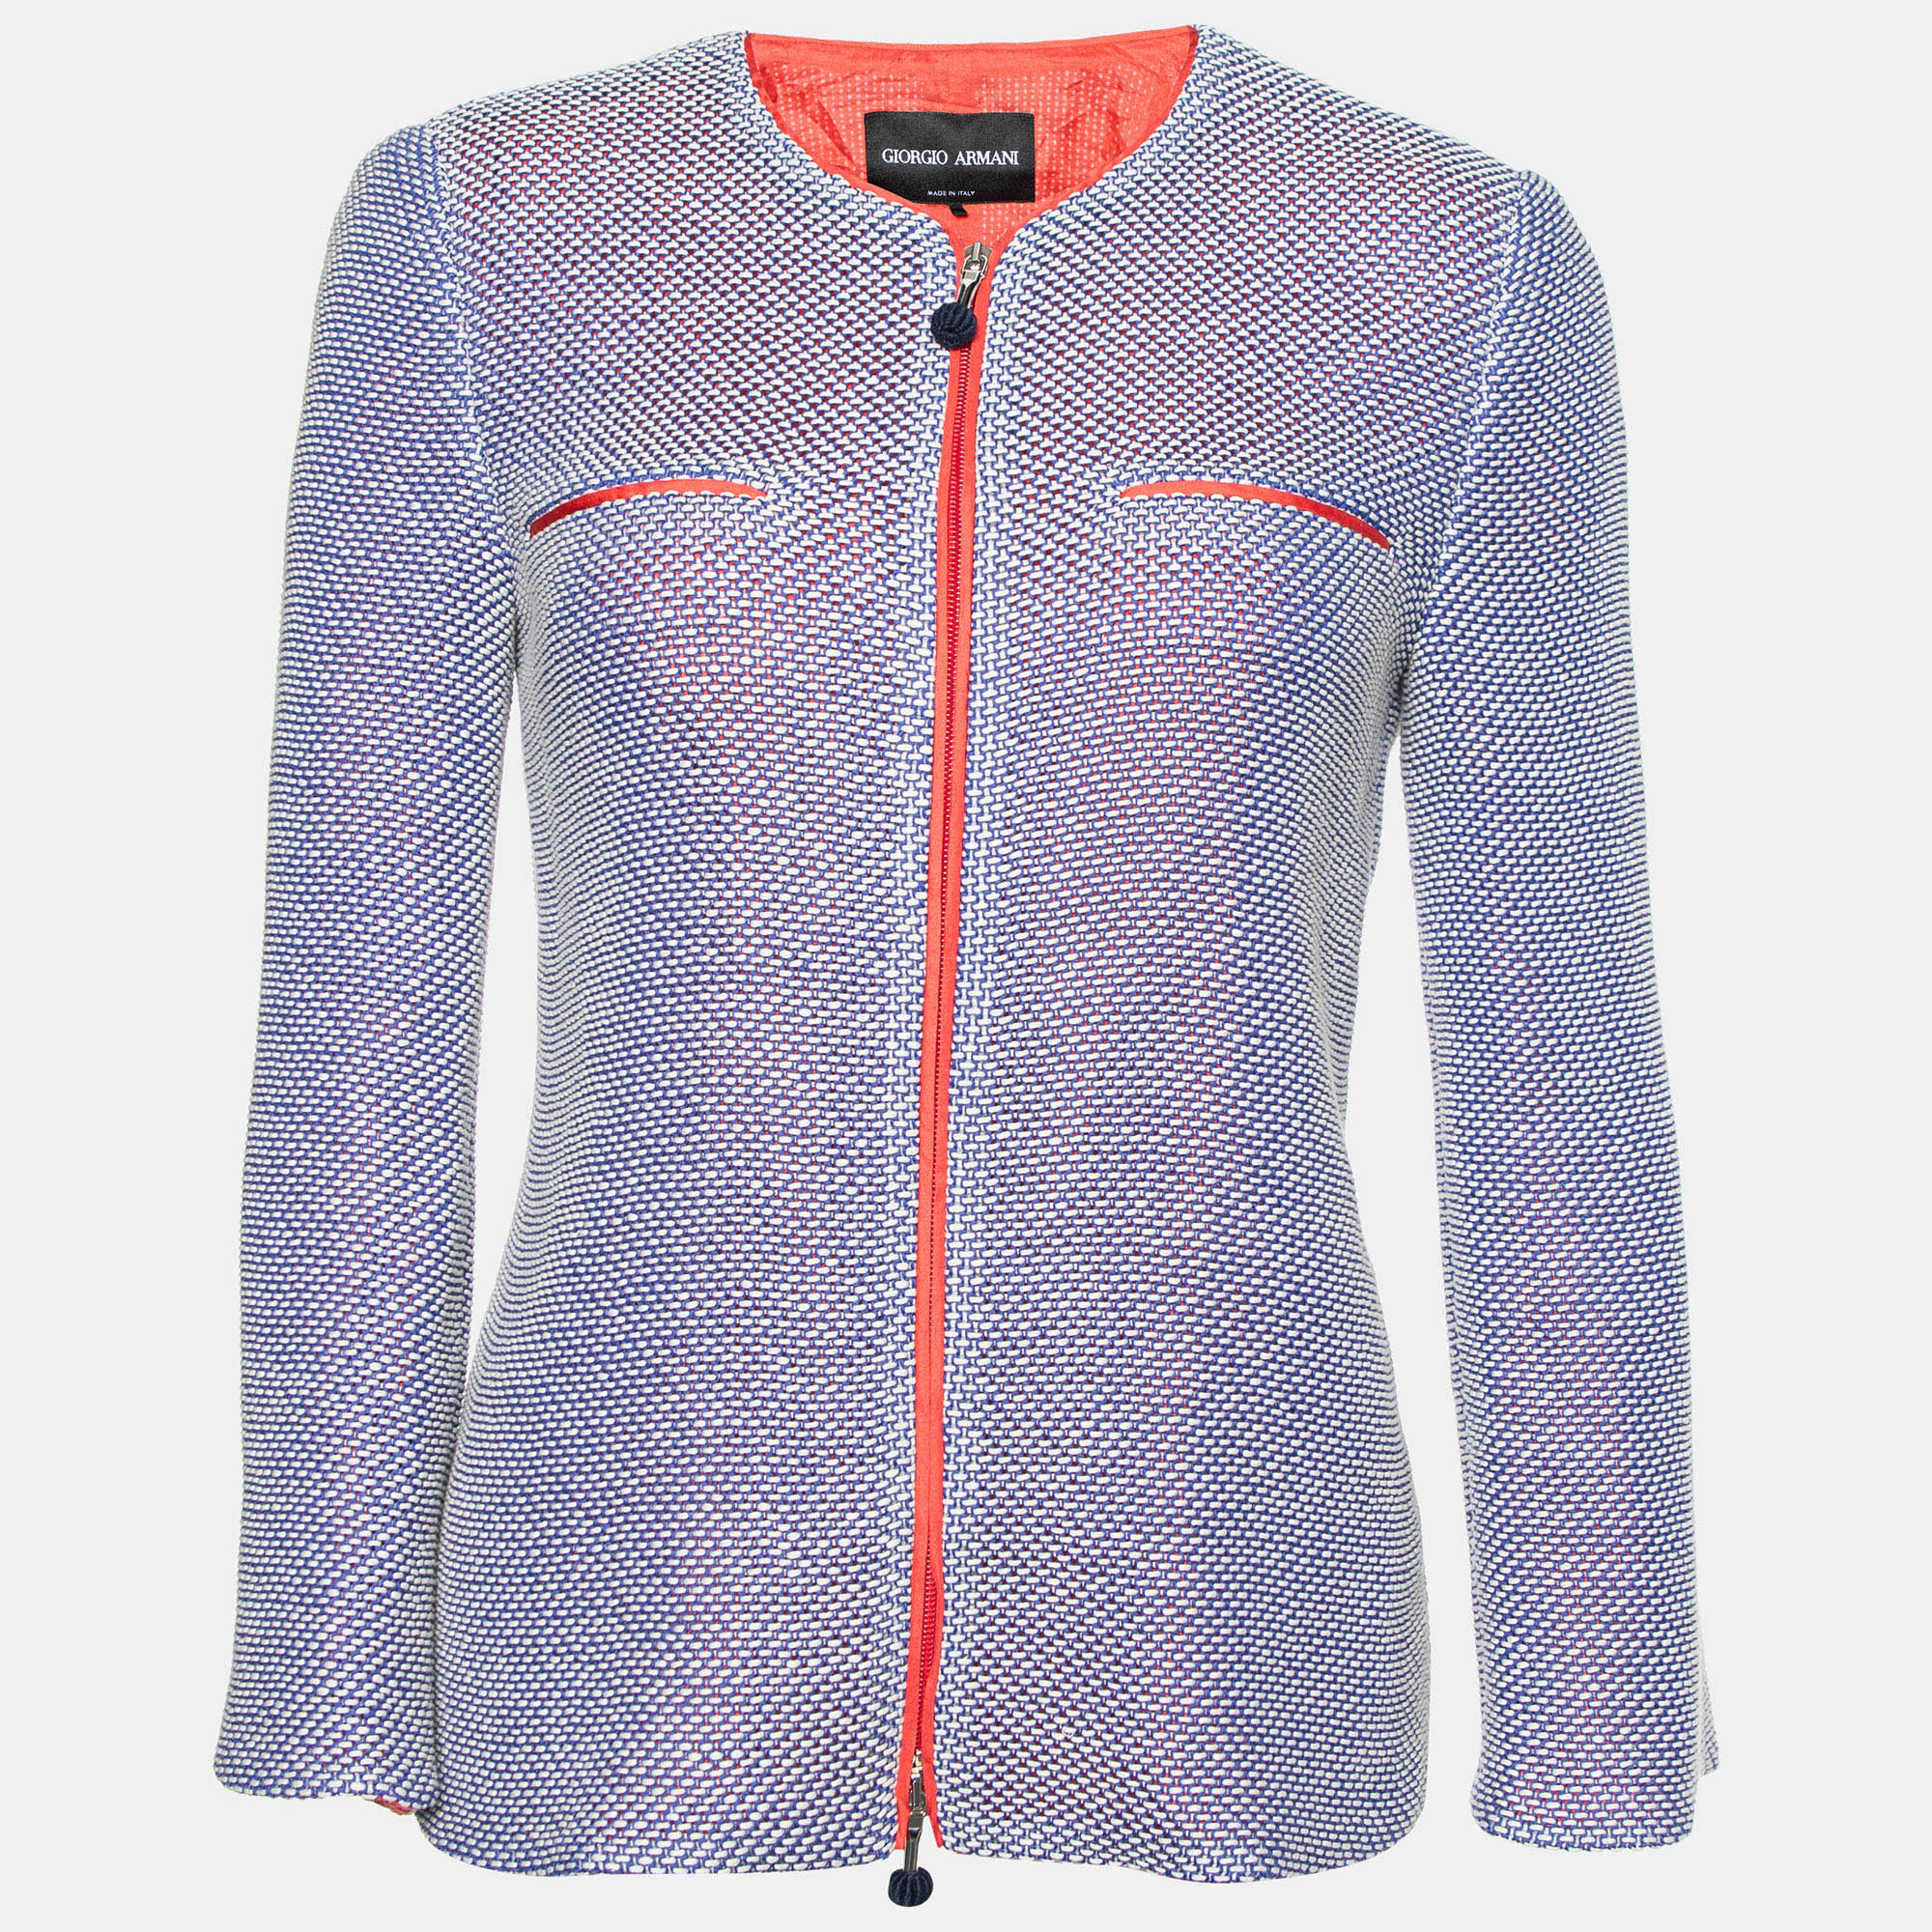 Giorgio armani blue/white textured cotton zip up jacket m